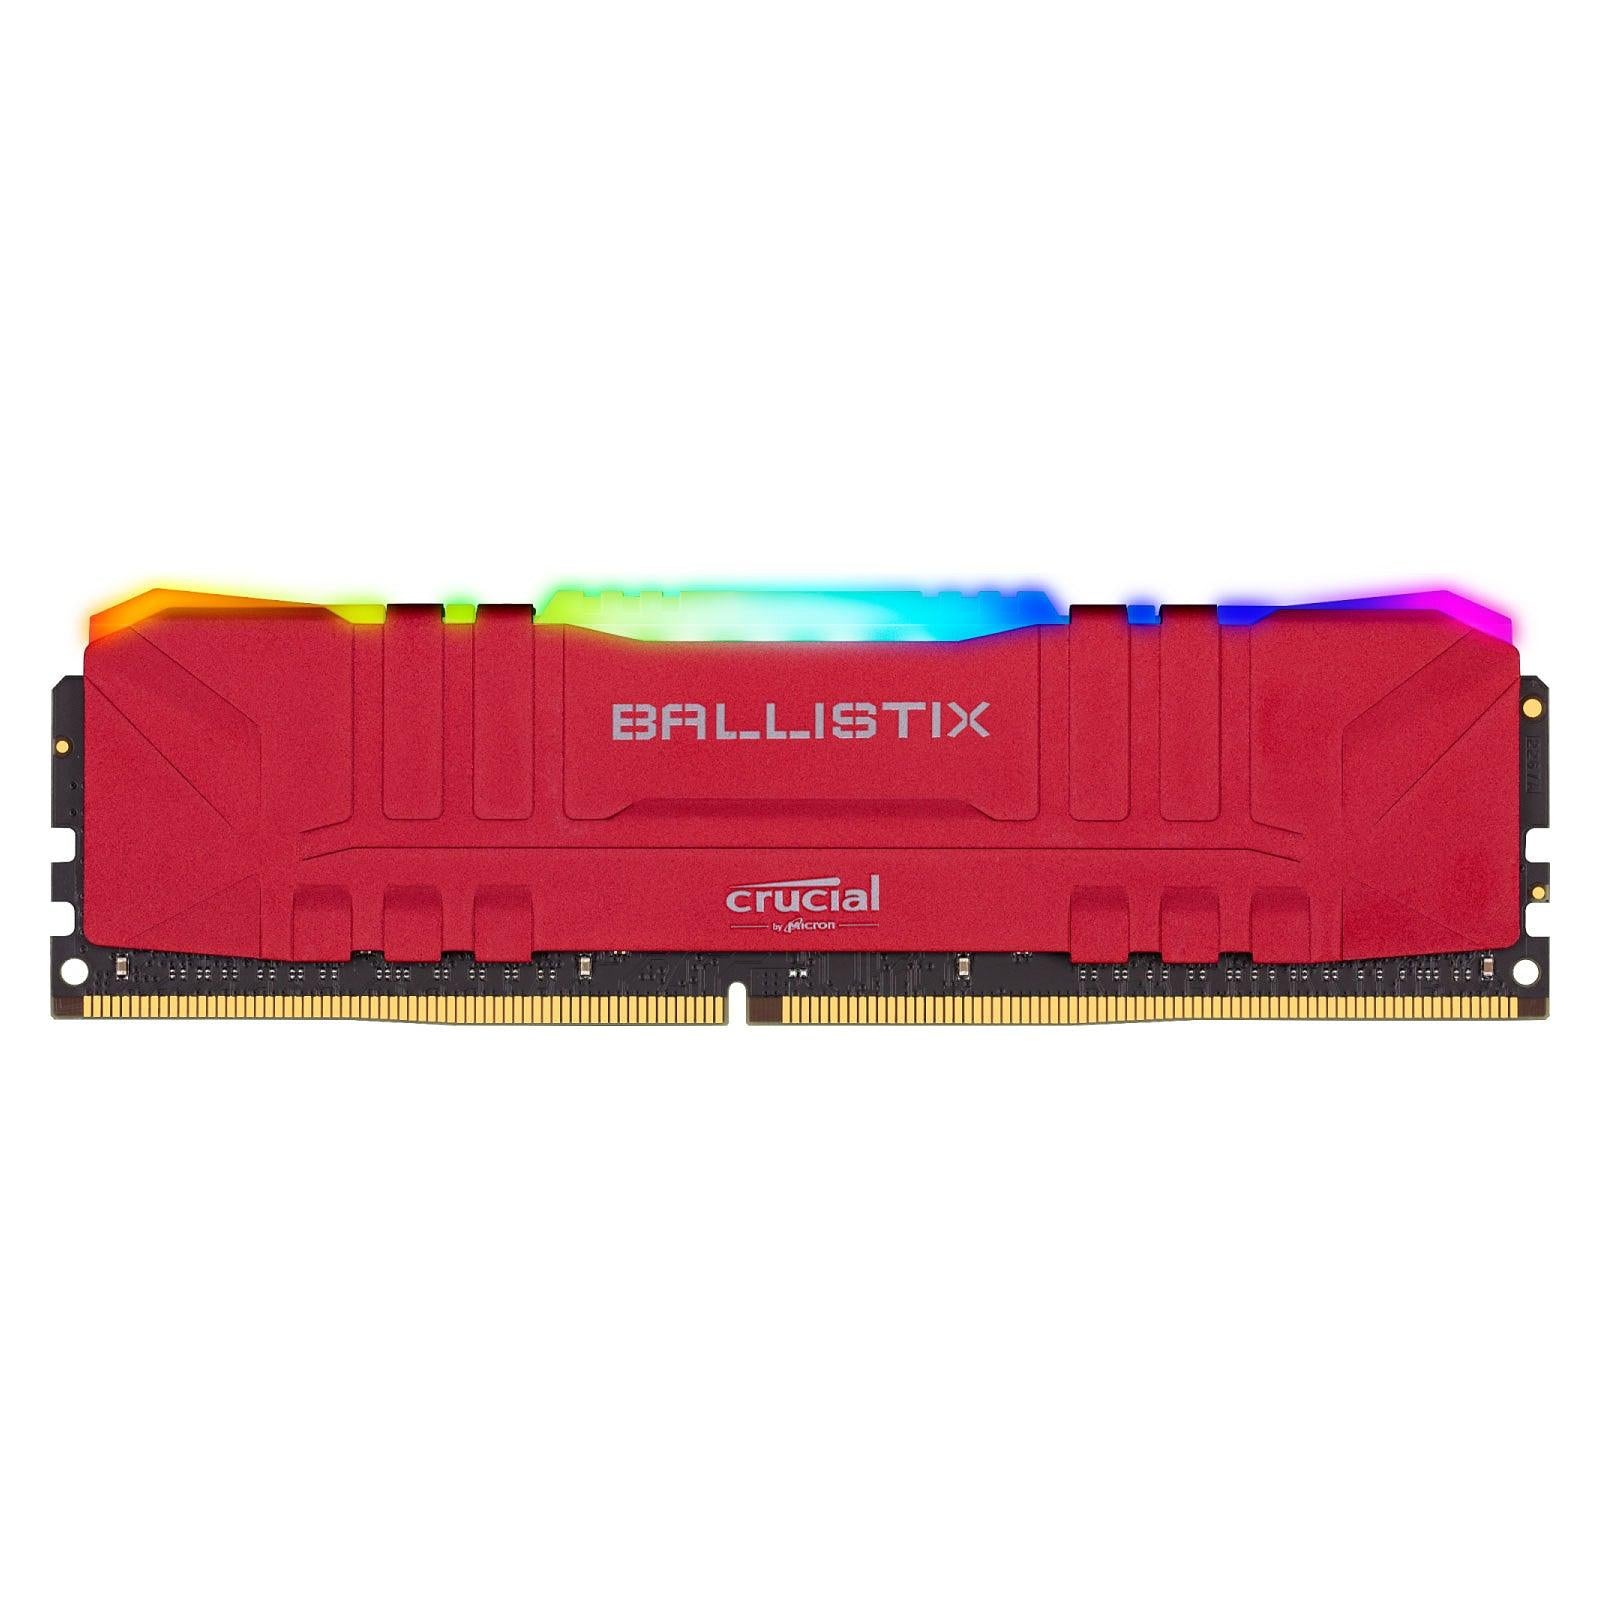 Crucial Ballistix RGB red maroc 16 Go  DDR4 3600 MHz  CL16 Rouge  Prix Barrette Memoire pas cher - smartmarket.ma